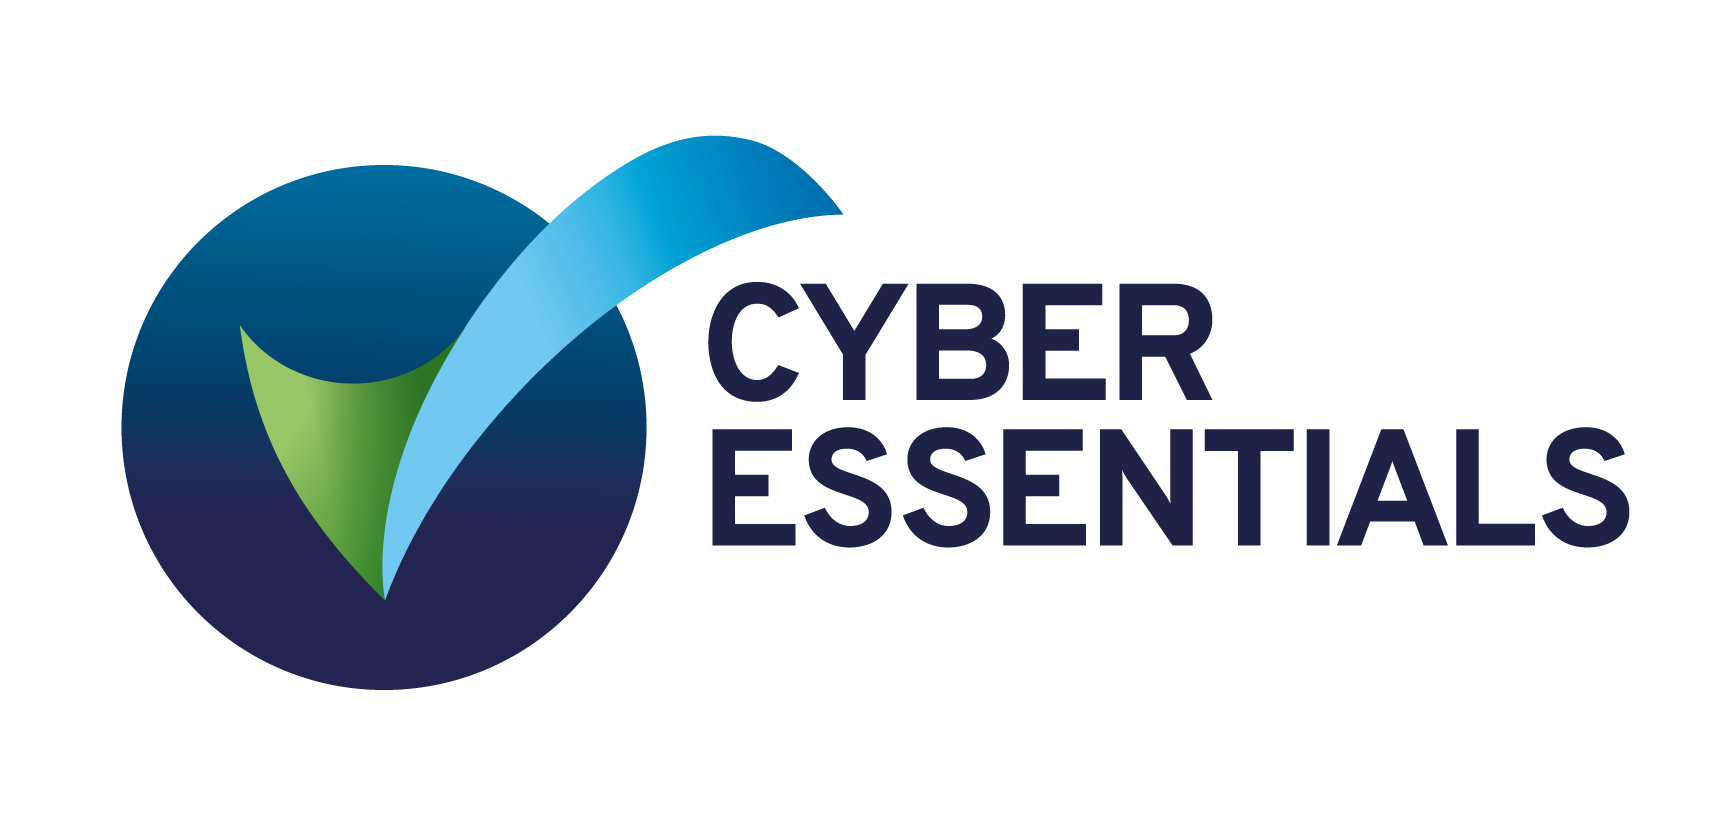 cyberEssentials-1